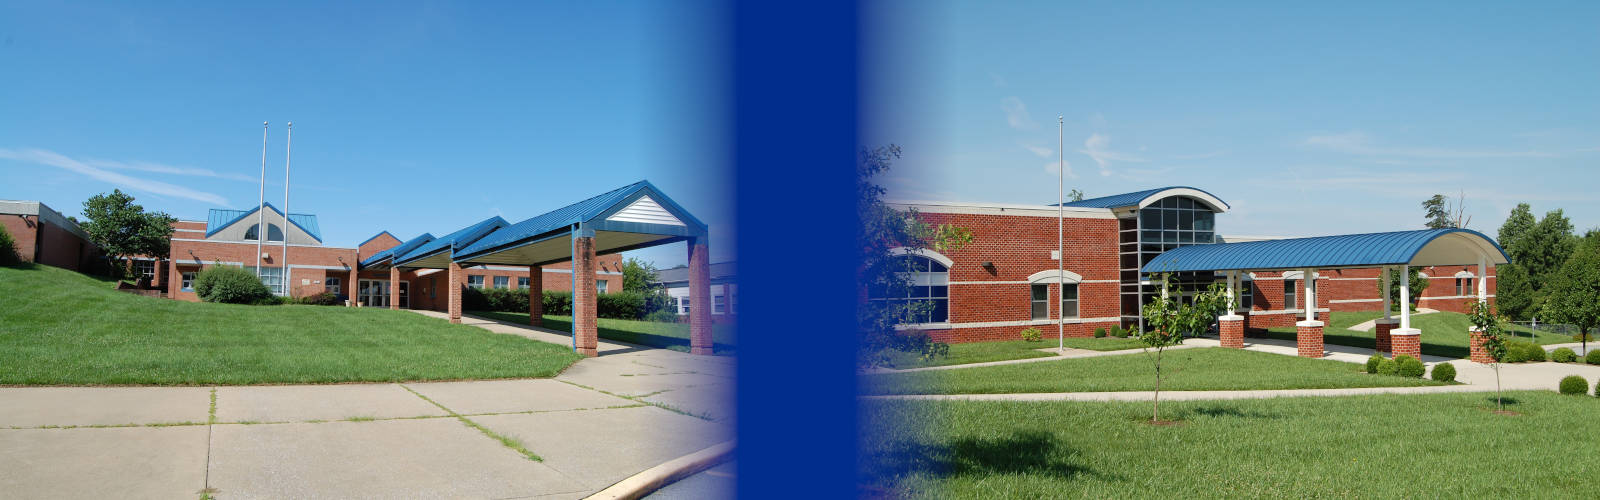 Blue Ridge Campus Schools